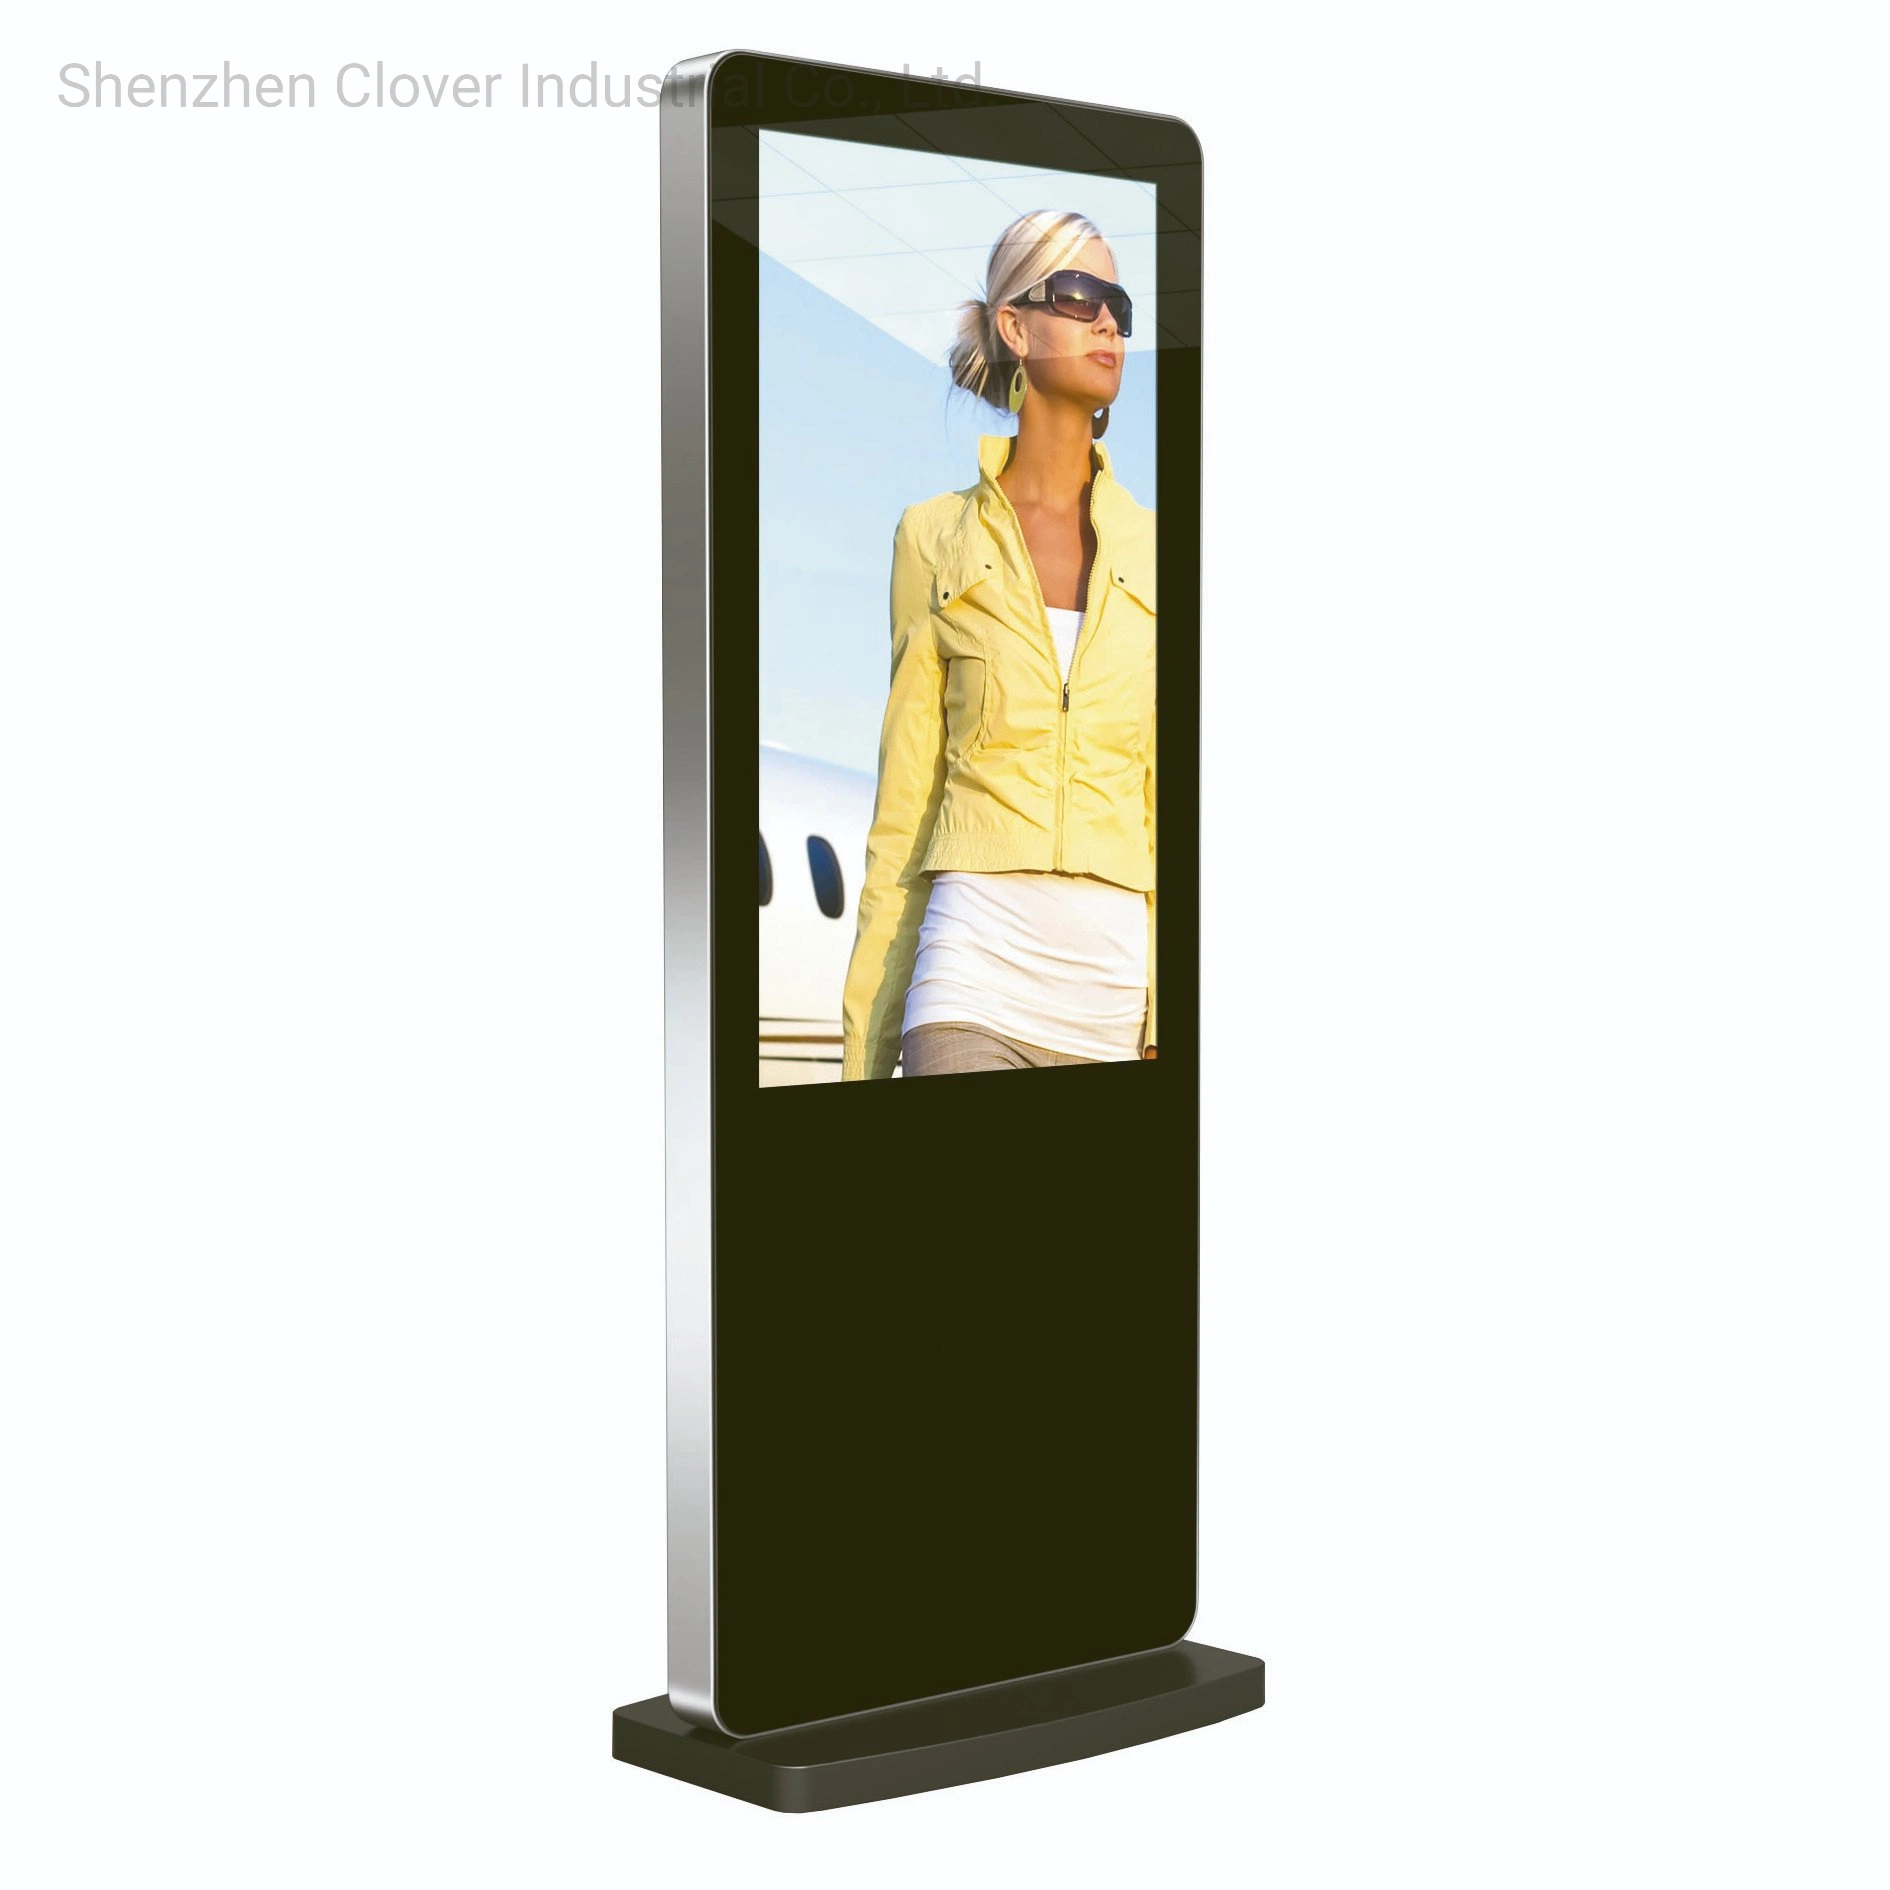 Ecrã LCD de 43 polegadas, de chão, para interior, com ecrã tátil interativo Ecrãs Ad Kiosk independente Digital Advertising Machine